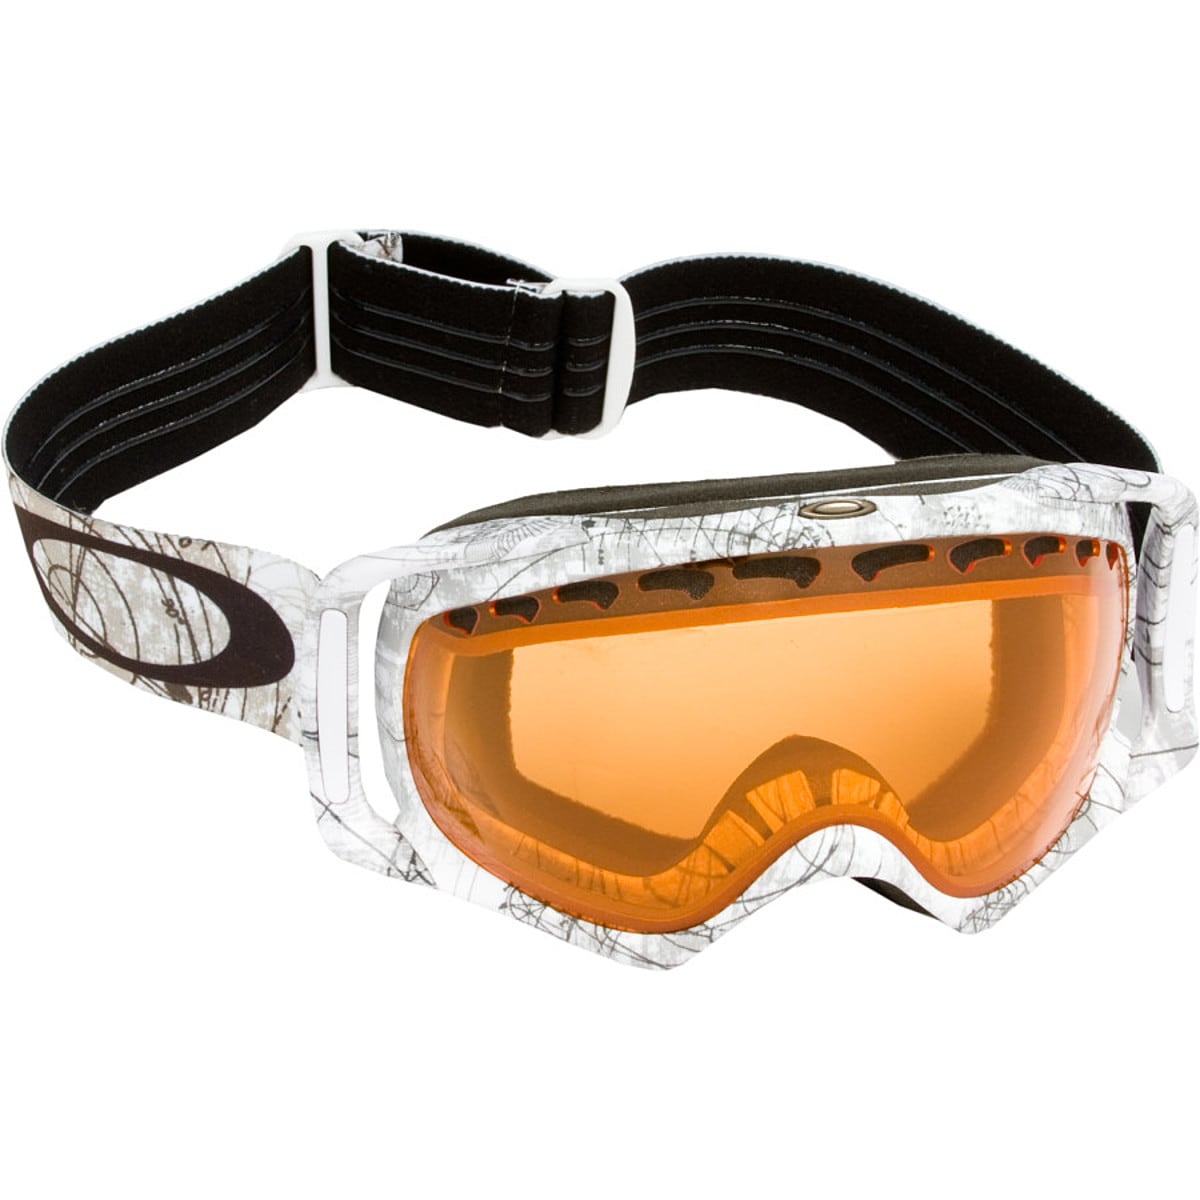 Oakley Crowbar Goggle - Men's - Ski